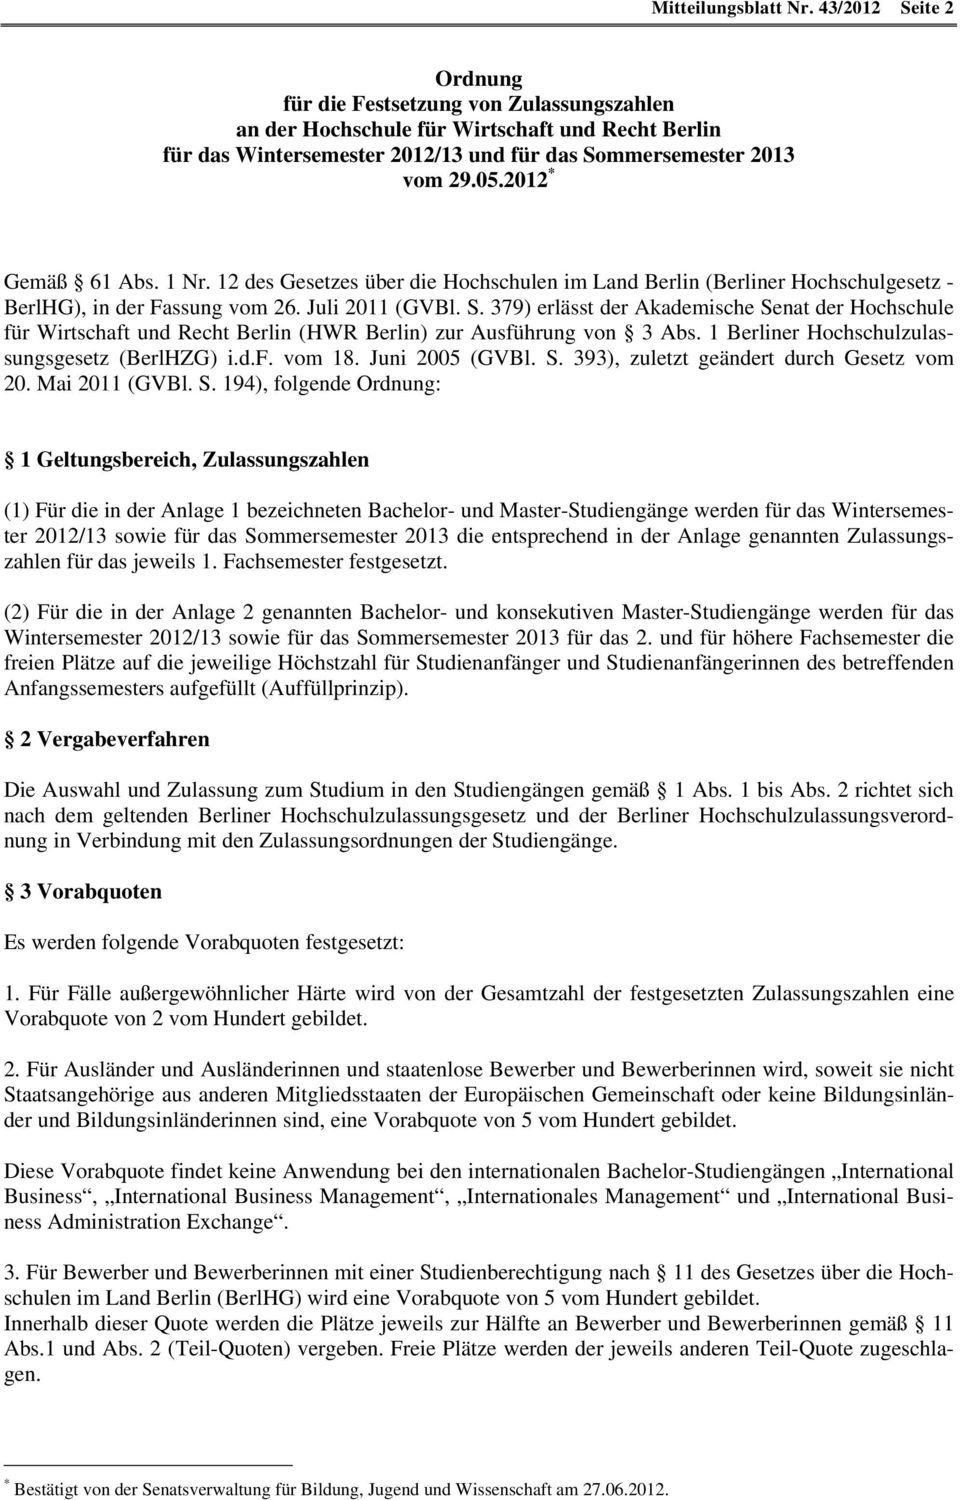 379) erlässt der Akademische Senat der Hochschule für Wirtschaft und Recht Berlin (HWR Berlin) zur Ausführung von 3 Abs. 1 Berliner Hochschulzulassungsgesetz (BerlHZG) i.d.f. vom 18. Juni 2005 (GVBl.